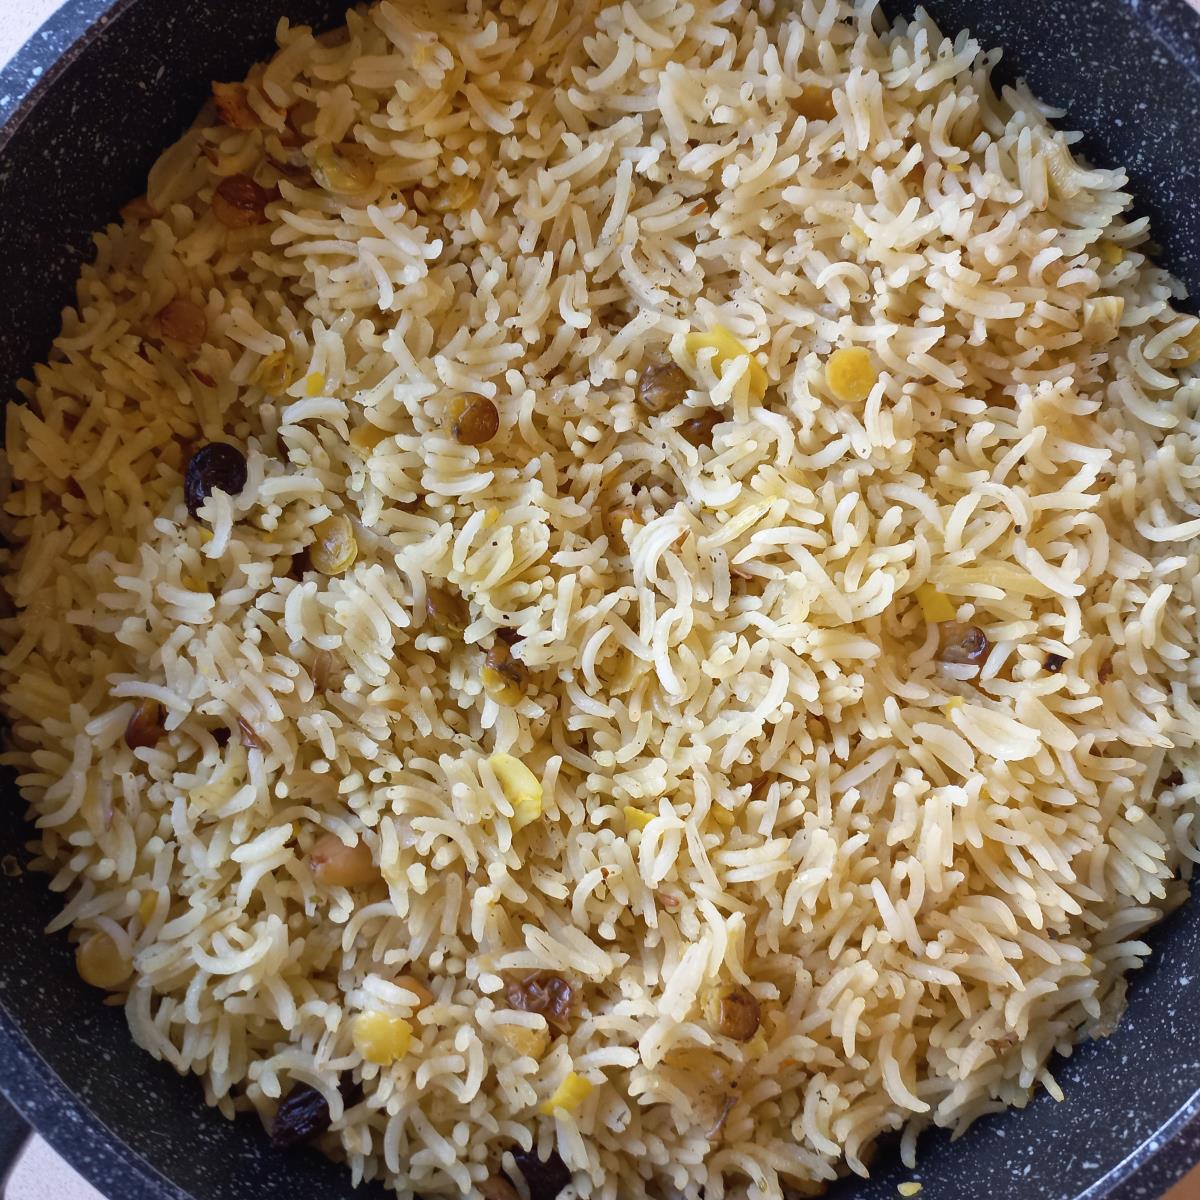 אורז עם תבלין בצל יבש עדשים ושקדים ממש טעים אני משתמשת באורז בסמטי